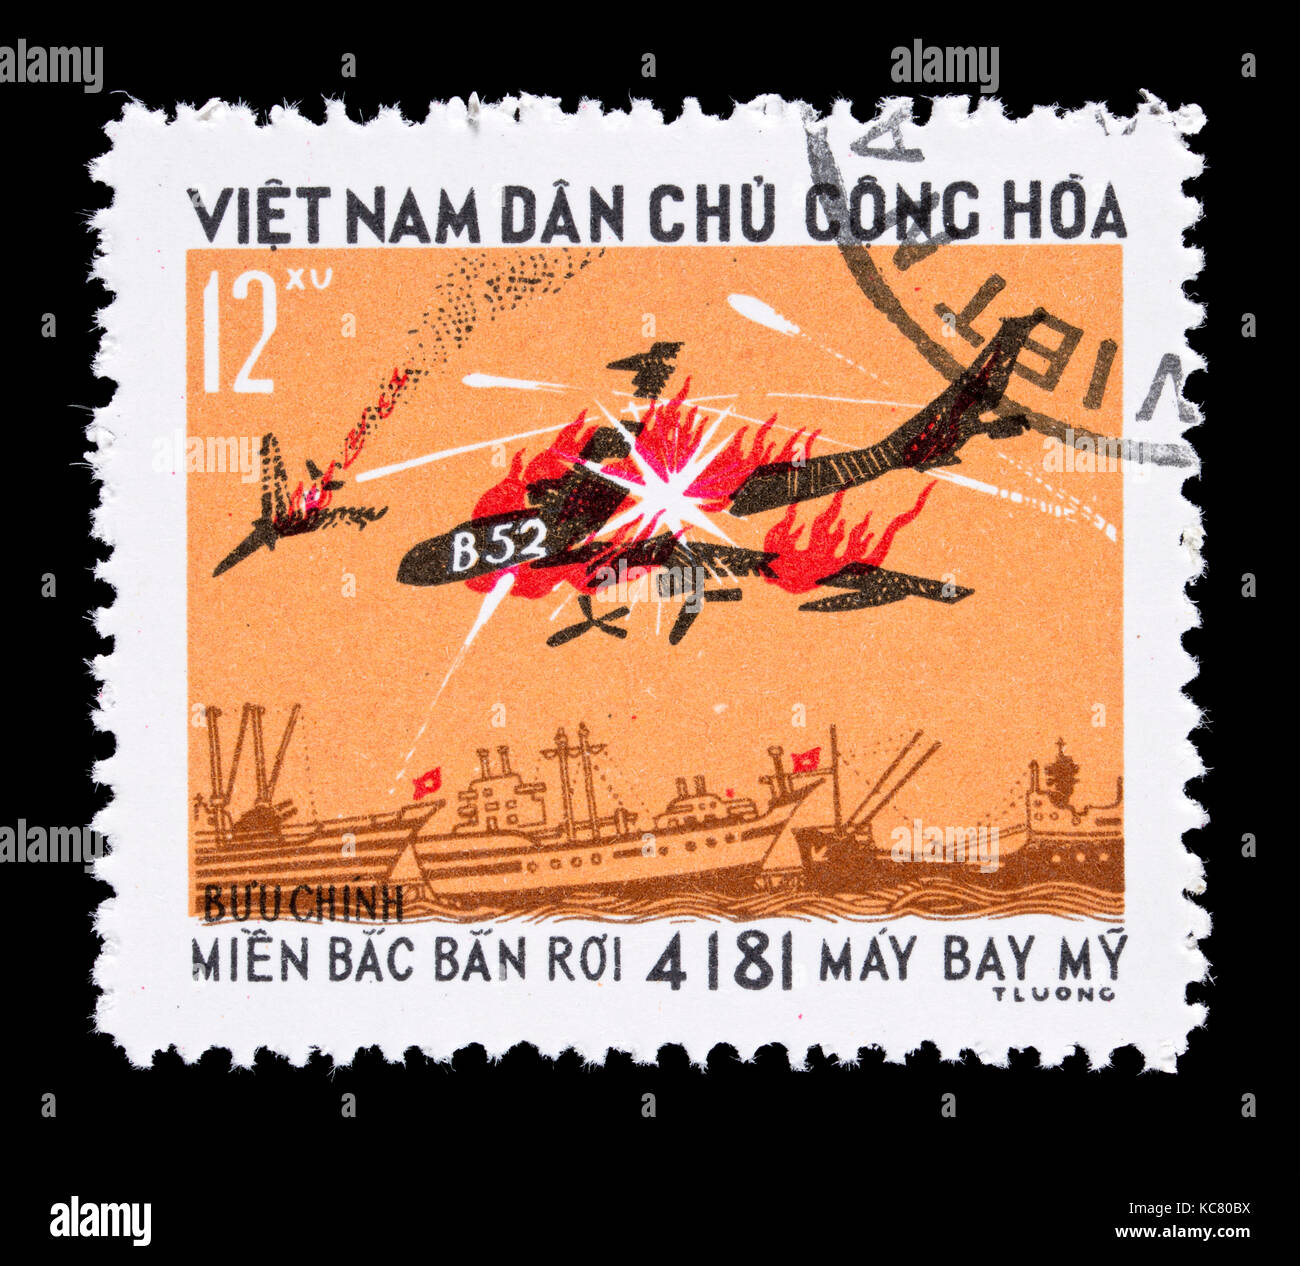 Timbre-poste du Vietnam représentant un United States B52 bomber être frappé d'une attaque d'avion. Banque D'Images